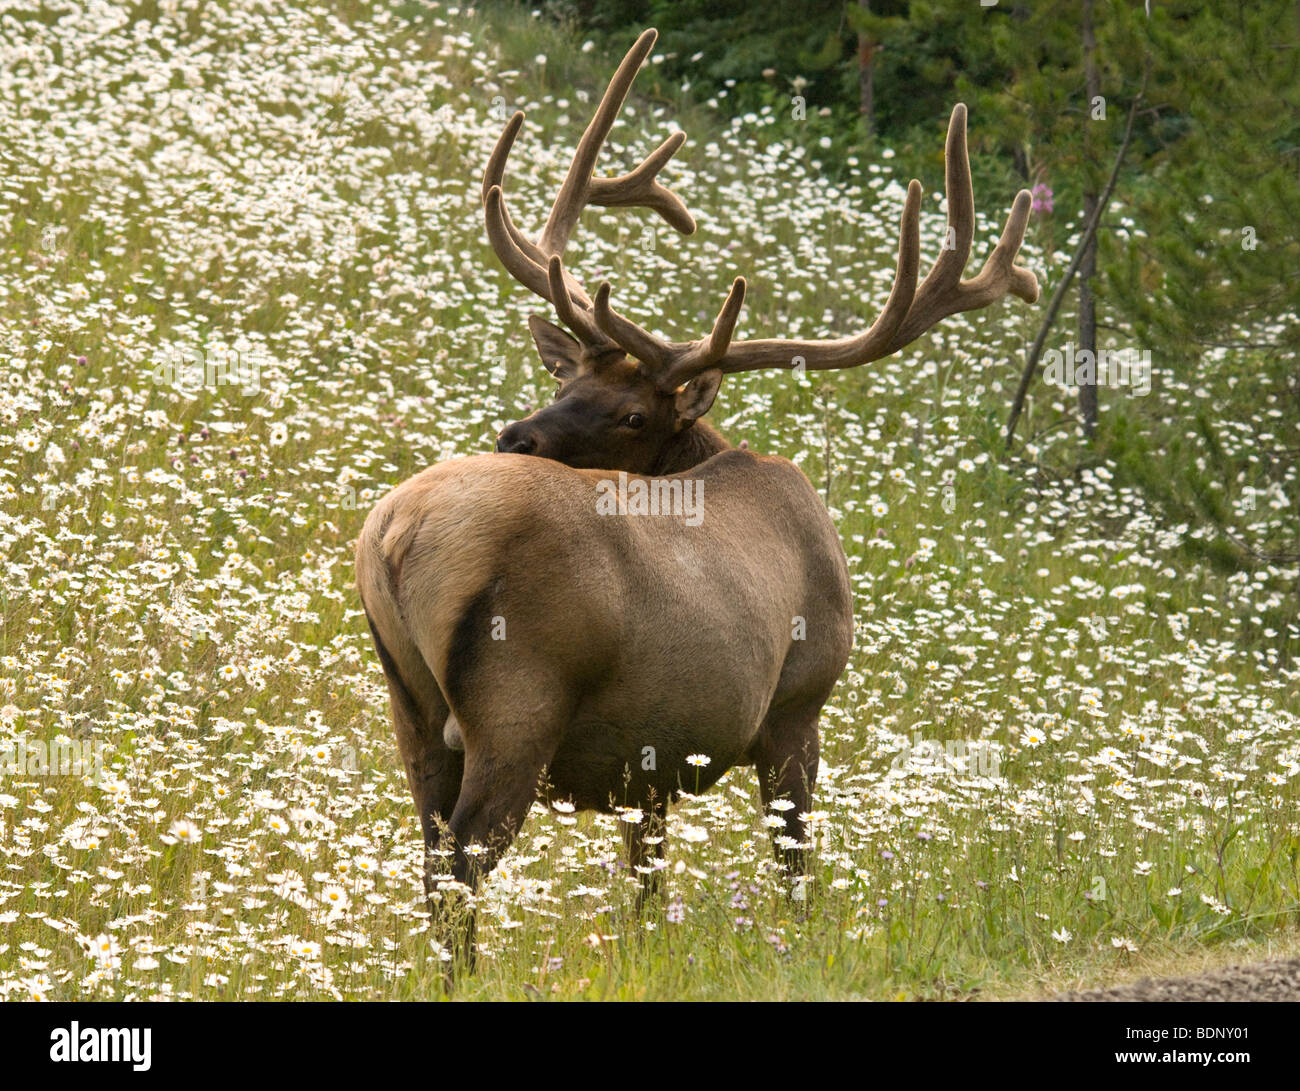 Bull elk mirando su espalda, rozando a un lado de la carretera Foto de stock